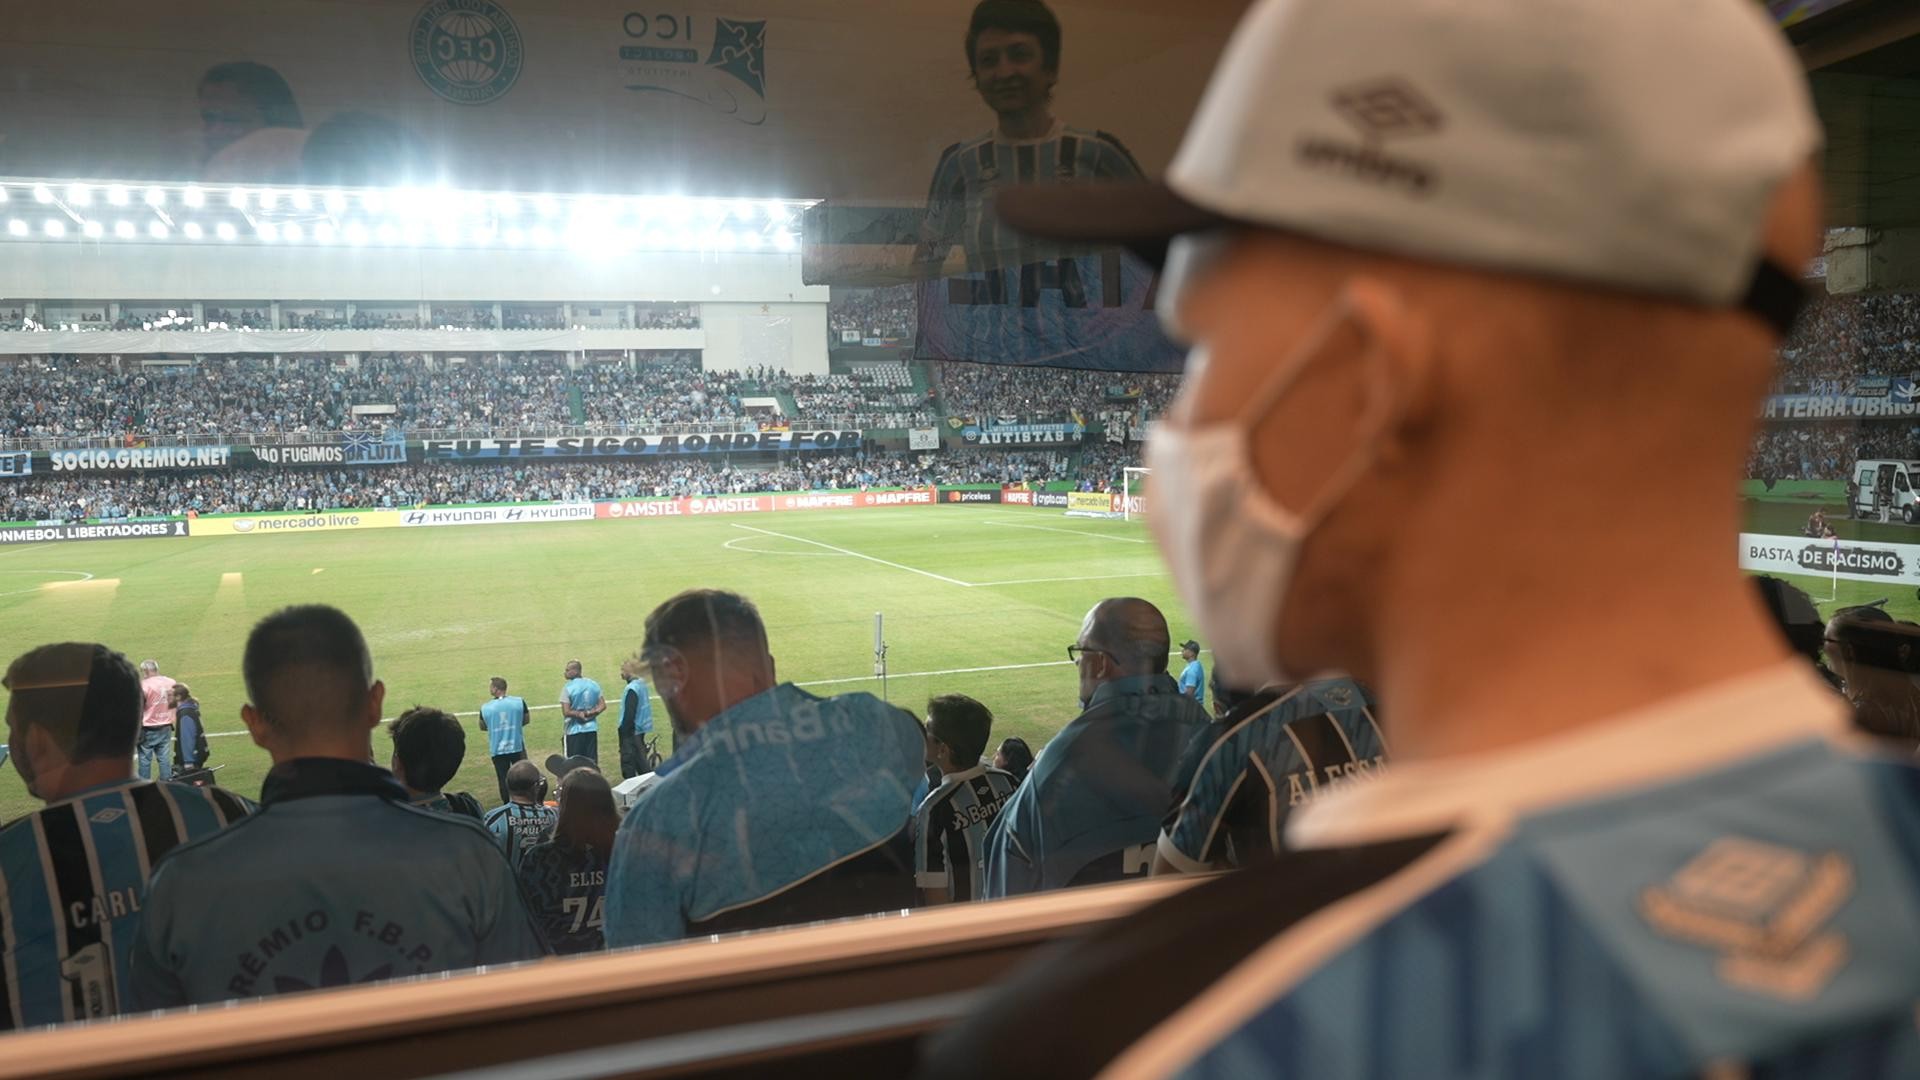 Jovem gremista em tratamento contra câncer em Curitiba realiza sonho de ver o time jogar: 'É surreal'